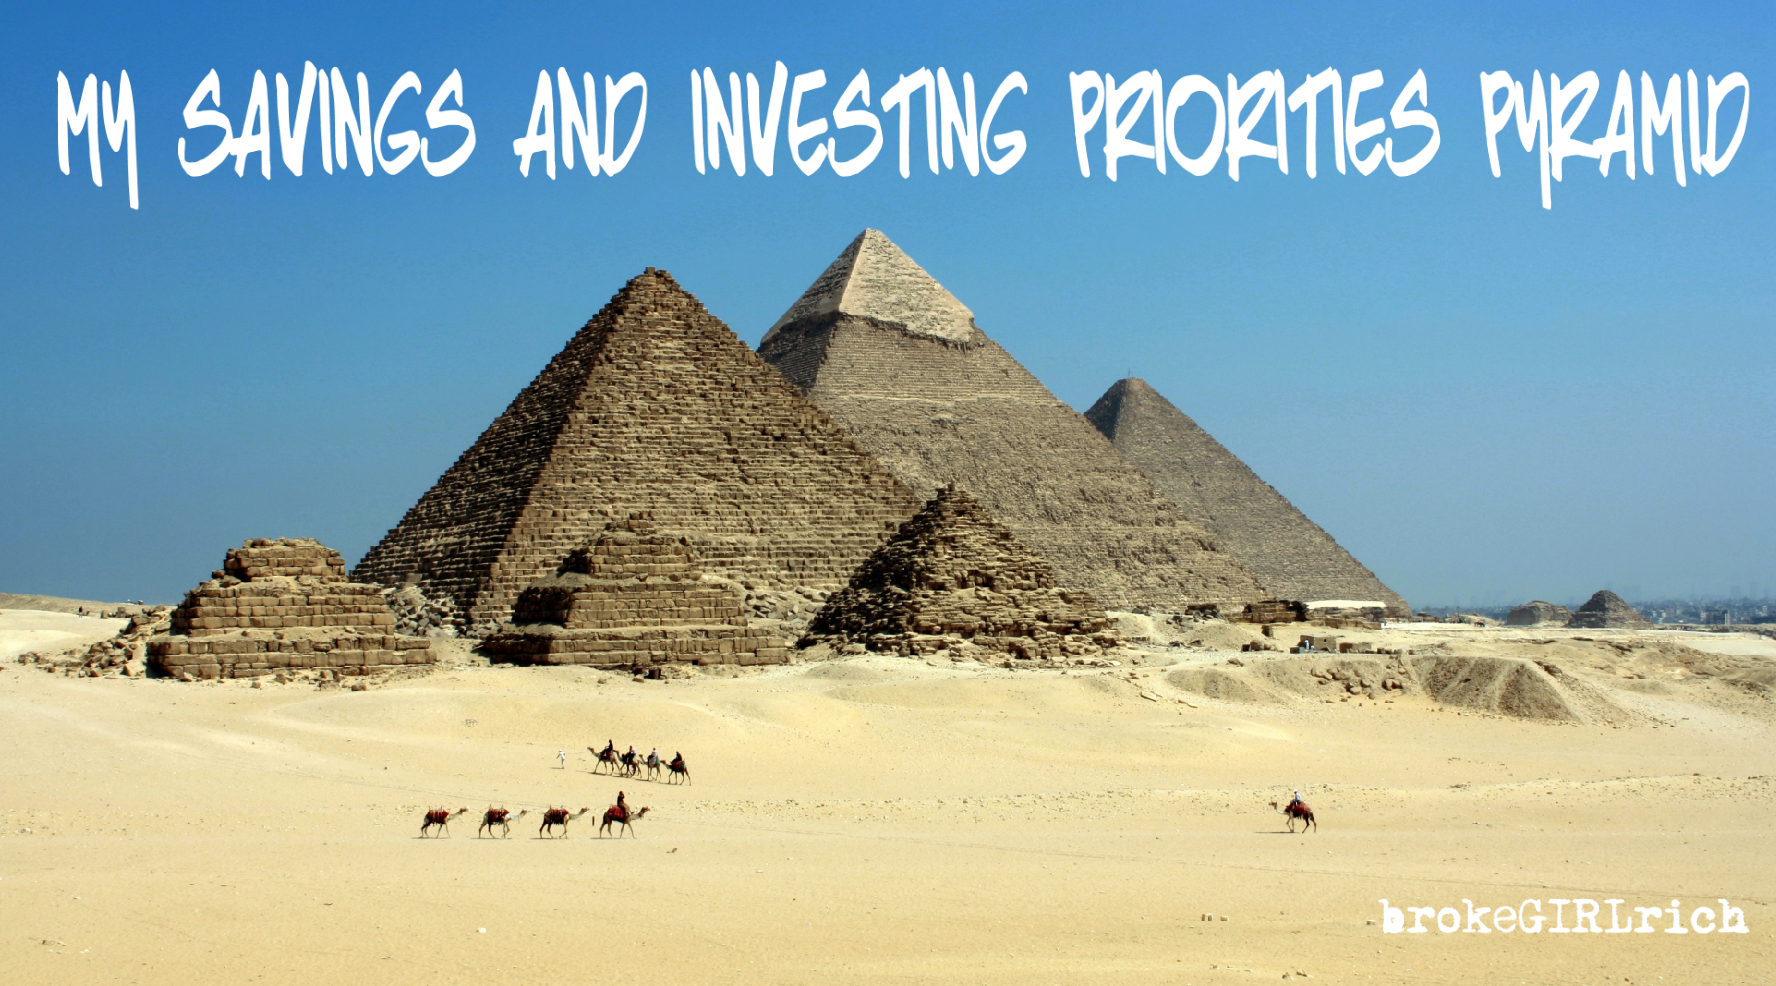 My Savings and Investing Priorities Pyramid